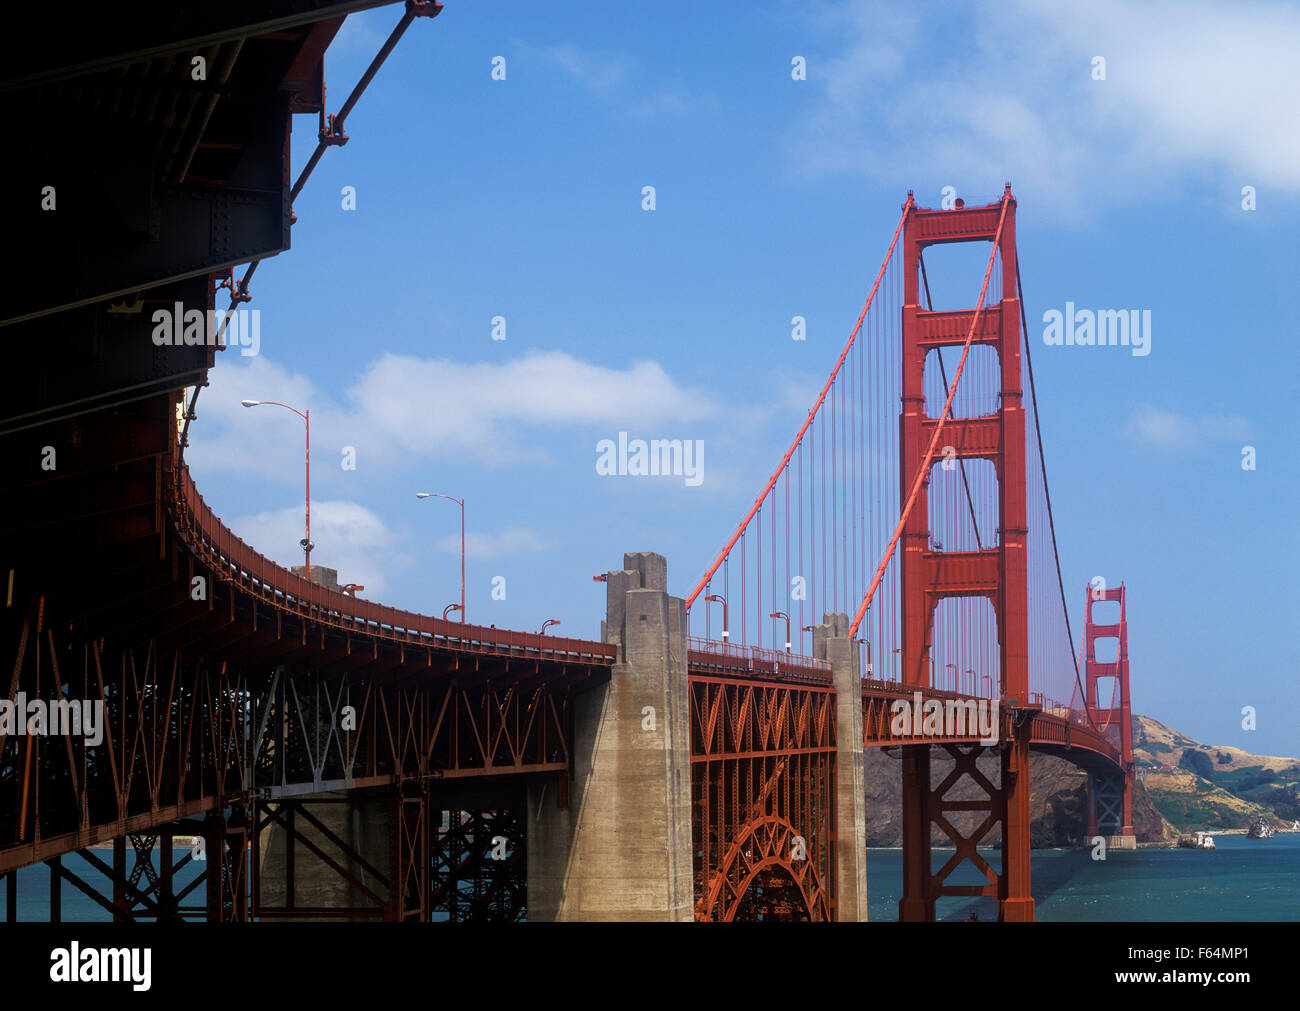 USA, California, San Francisco, Golden Gate Bridge Stock Photo